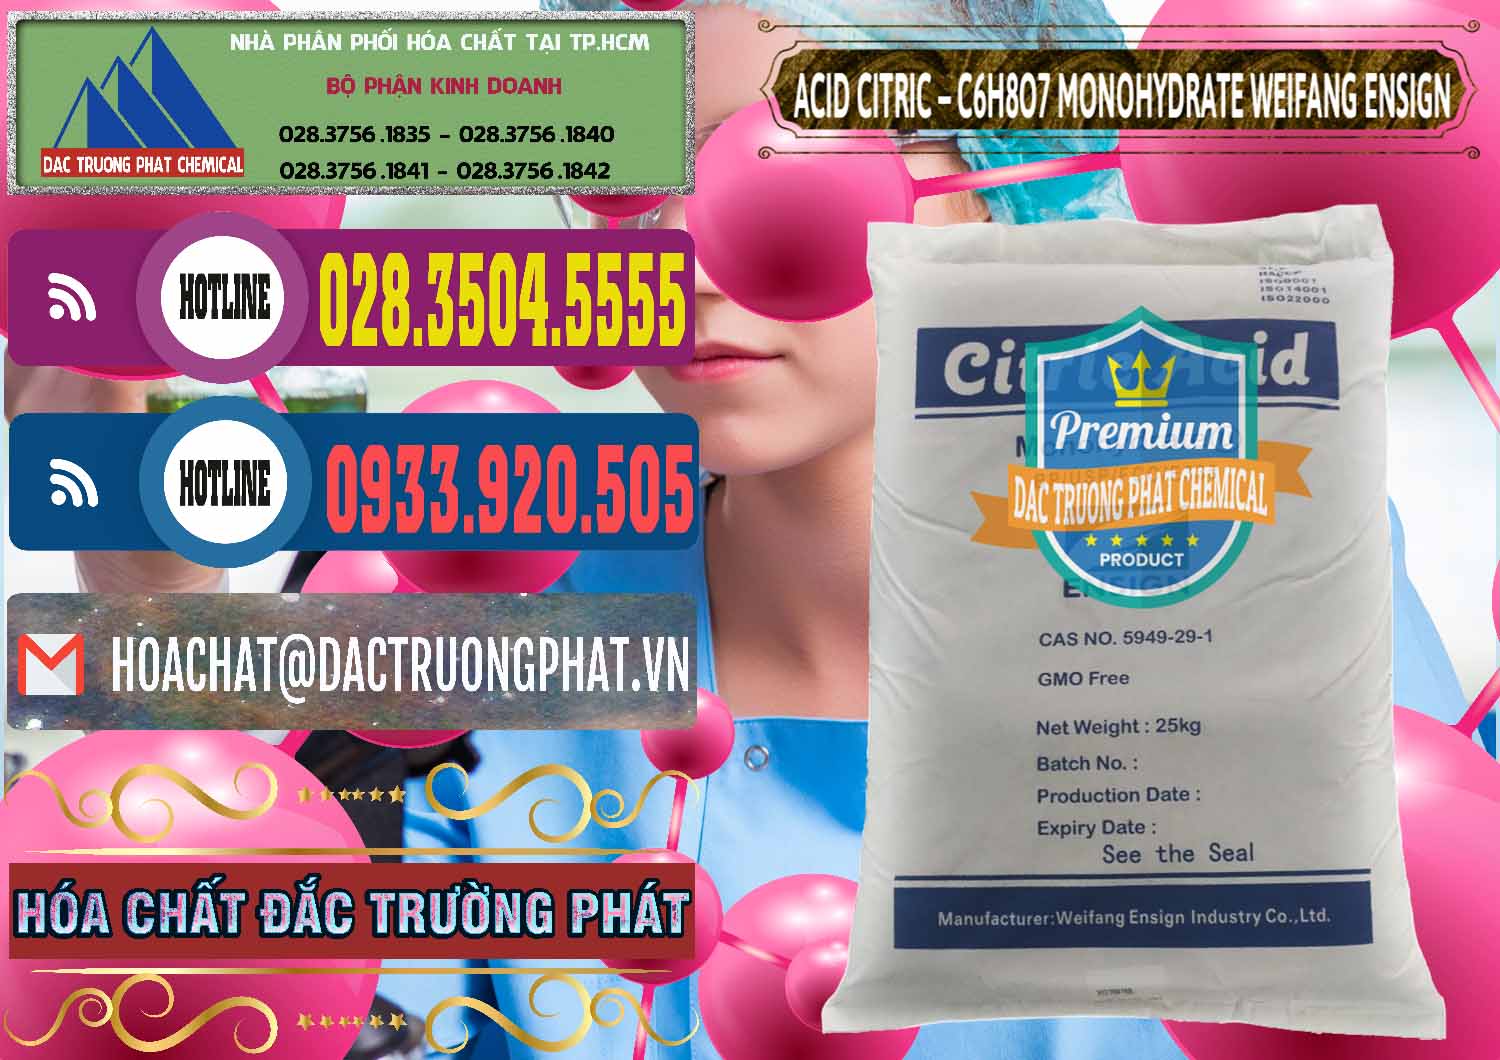 Nơi chuyên phân phối - bán Acid Citric - Axit Citric Monohydrate Weifang Trung Quốc China - 0009 - Chuyên kinh doanh & cung cấp hóa chất tại TP.HCM - muabanhoachat.com.vn